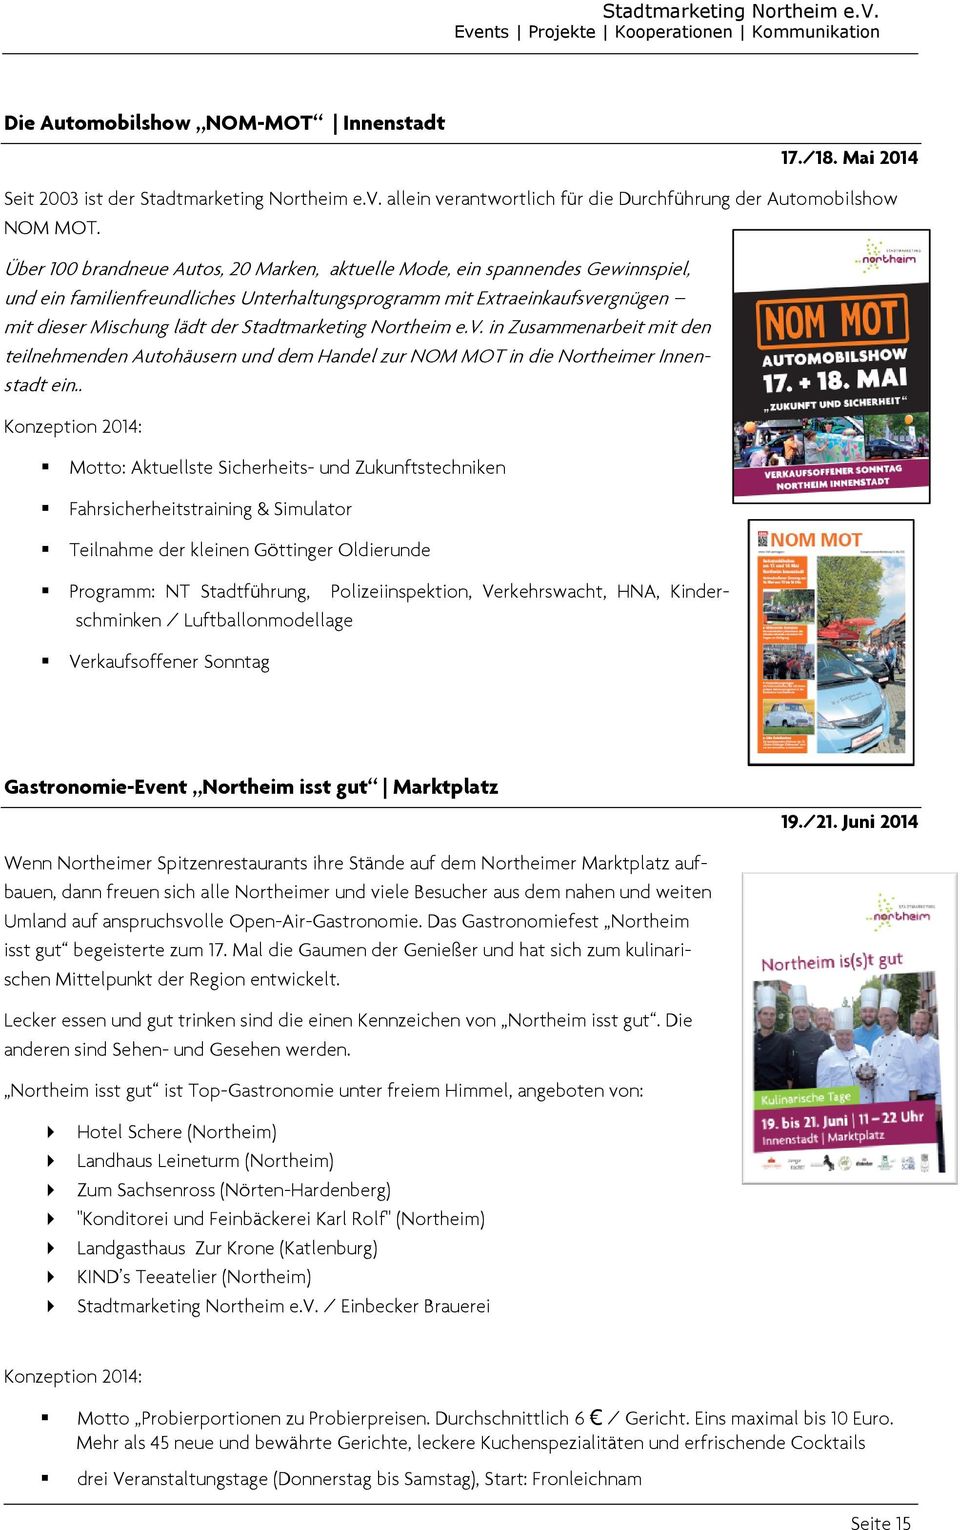 Stadtmarketing Northeim e.v. in Zusammenarbeit mit den teilnehmenden Autohäusern und dem Handel zur NOM MOT in die Northeimer Innenstadt ein.